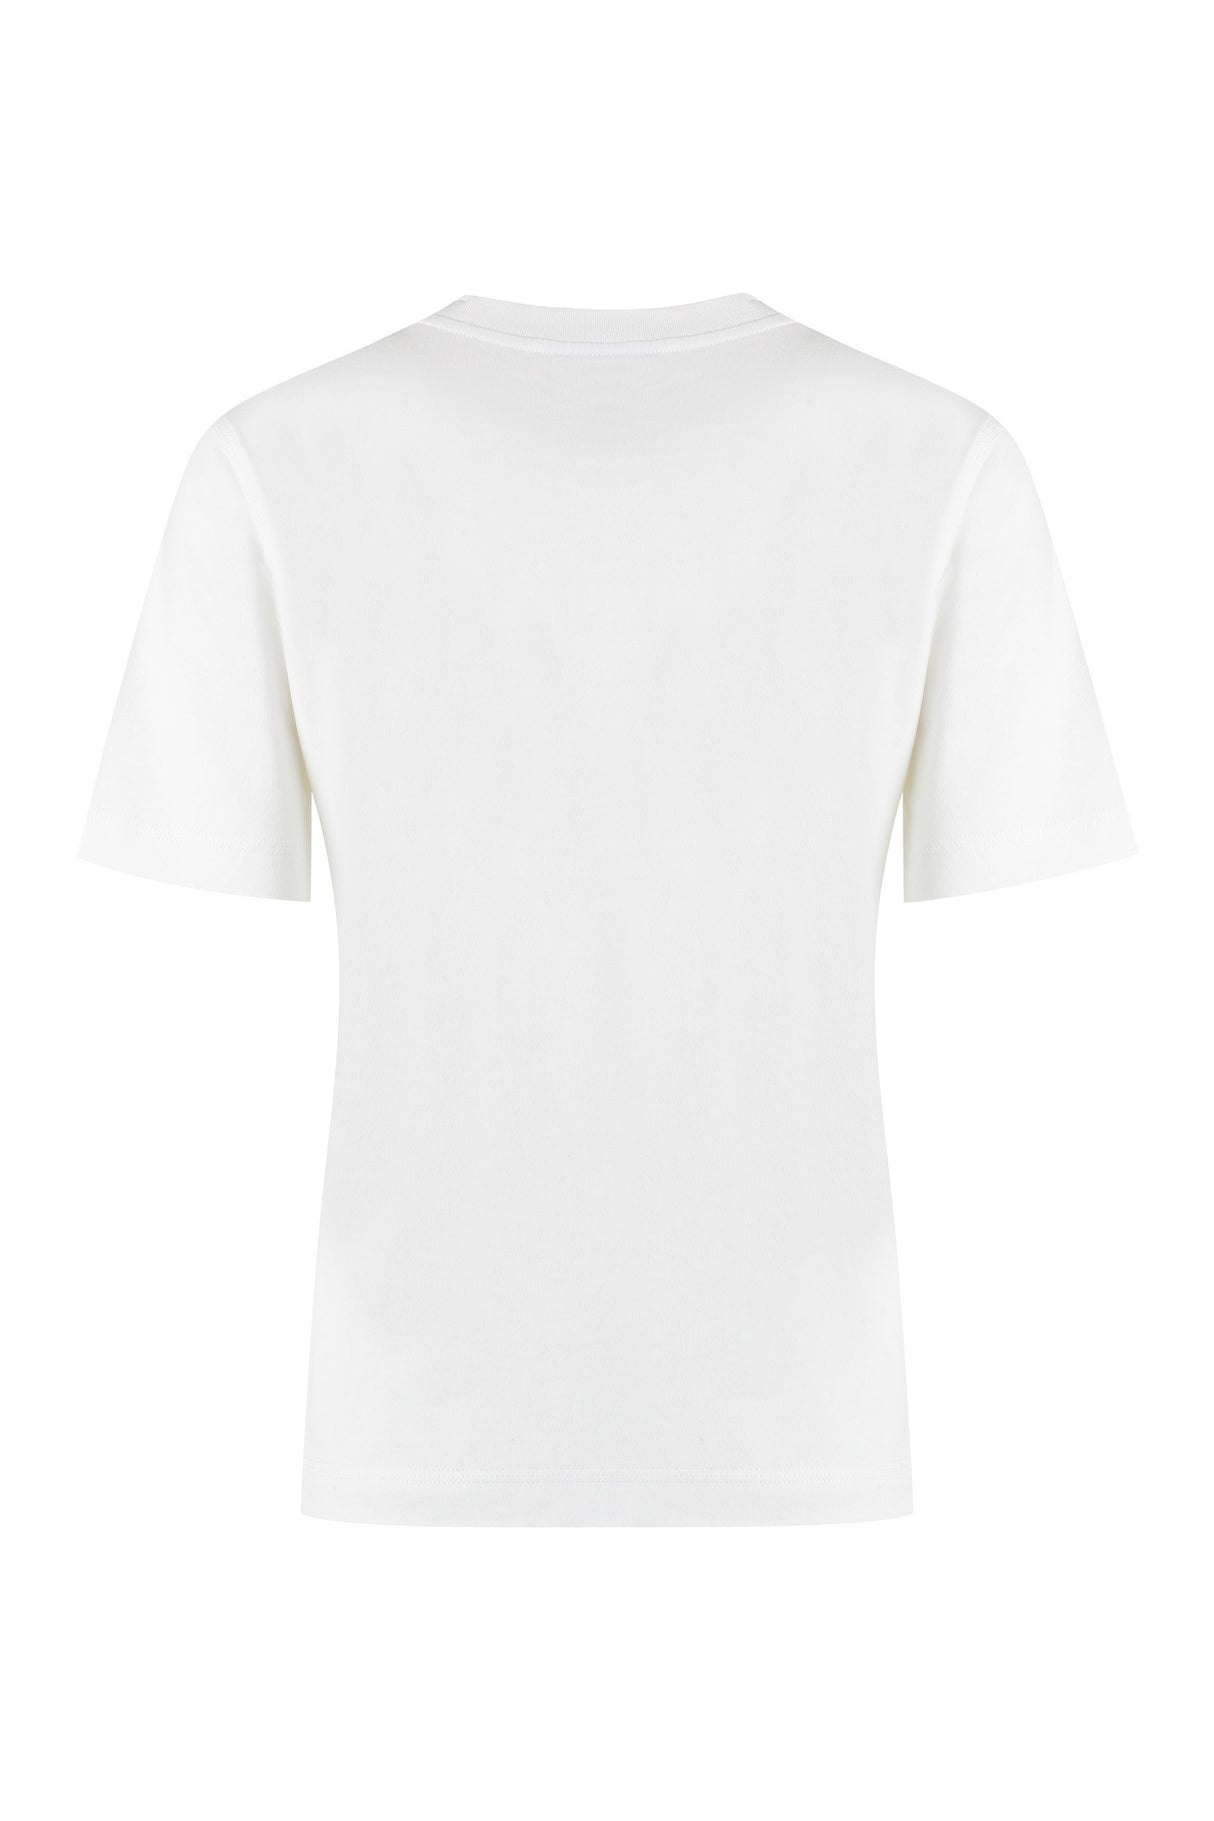 クルーネックの白いTシャツ レディース - SS24 コレクション